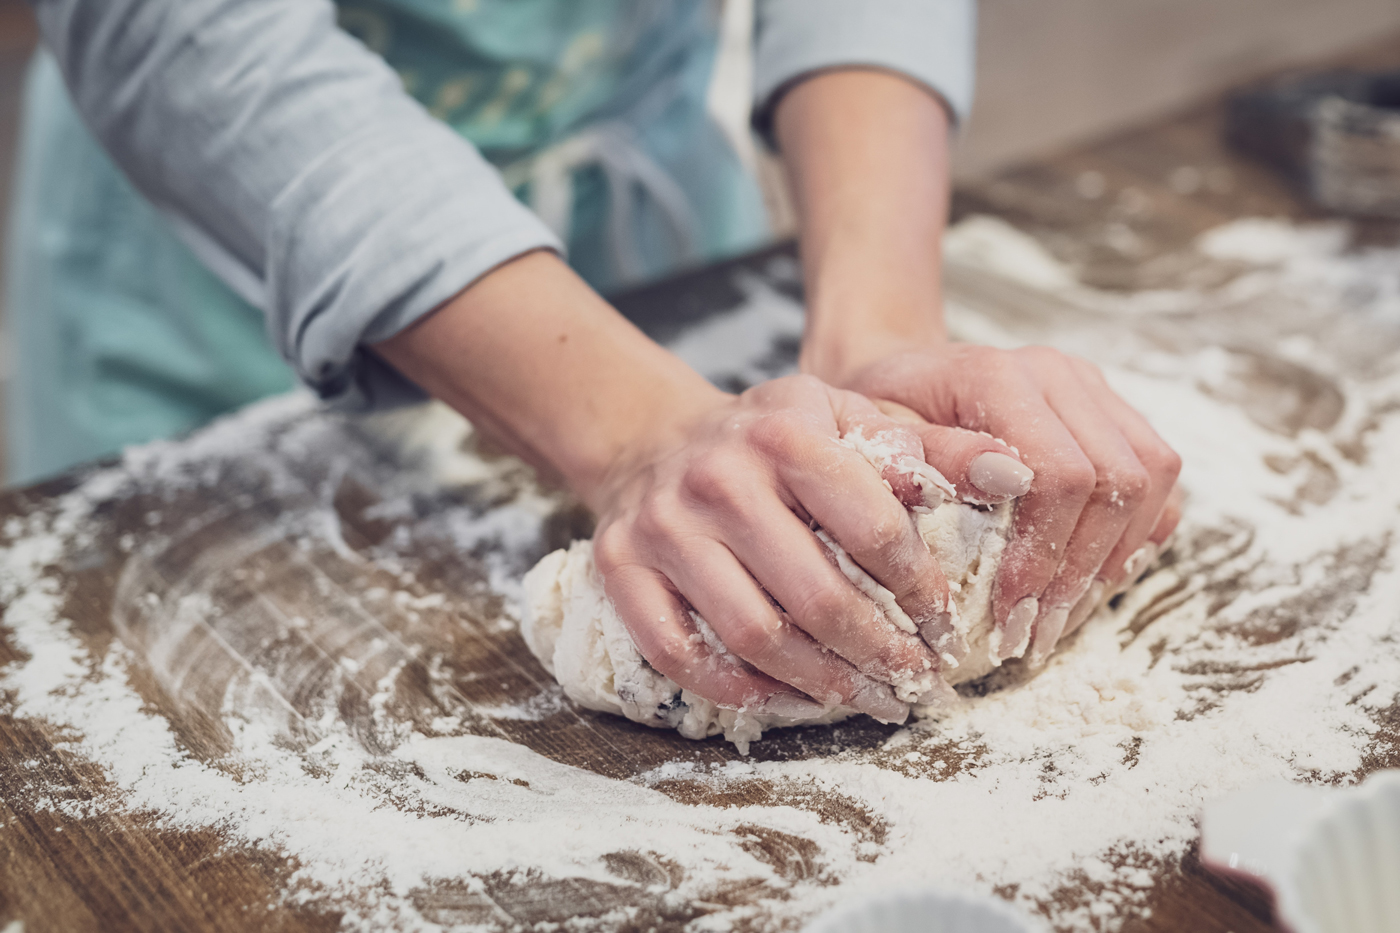 Hands rolling dough in flour.